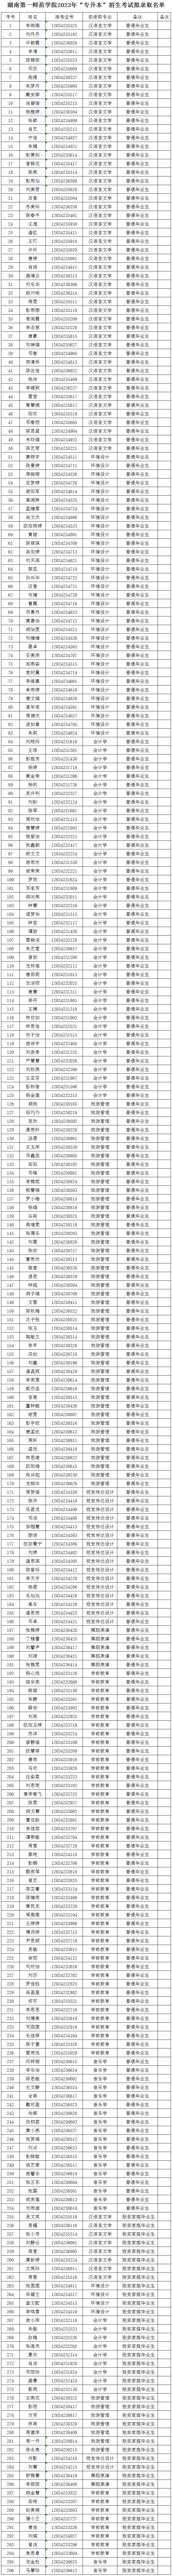 湖南第一师范学院2023年“专升本”招生考试拟录取名单